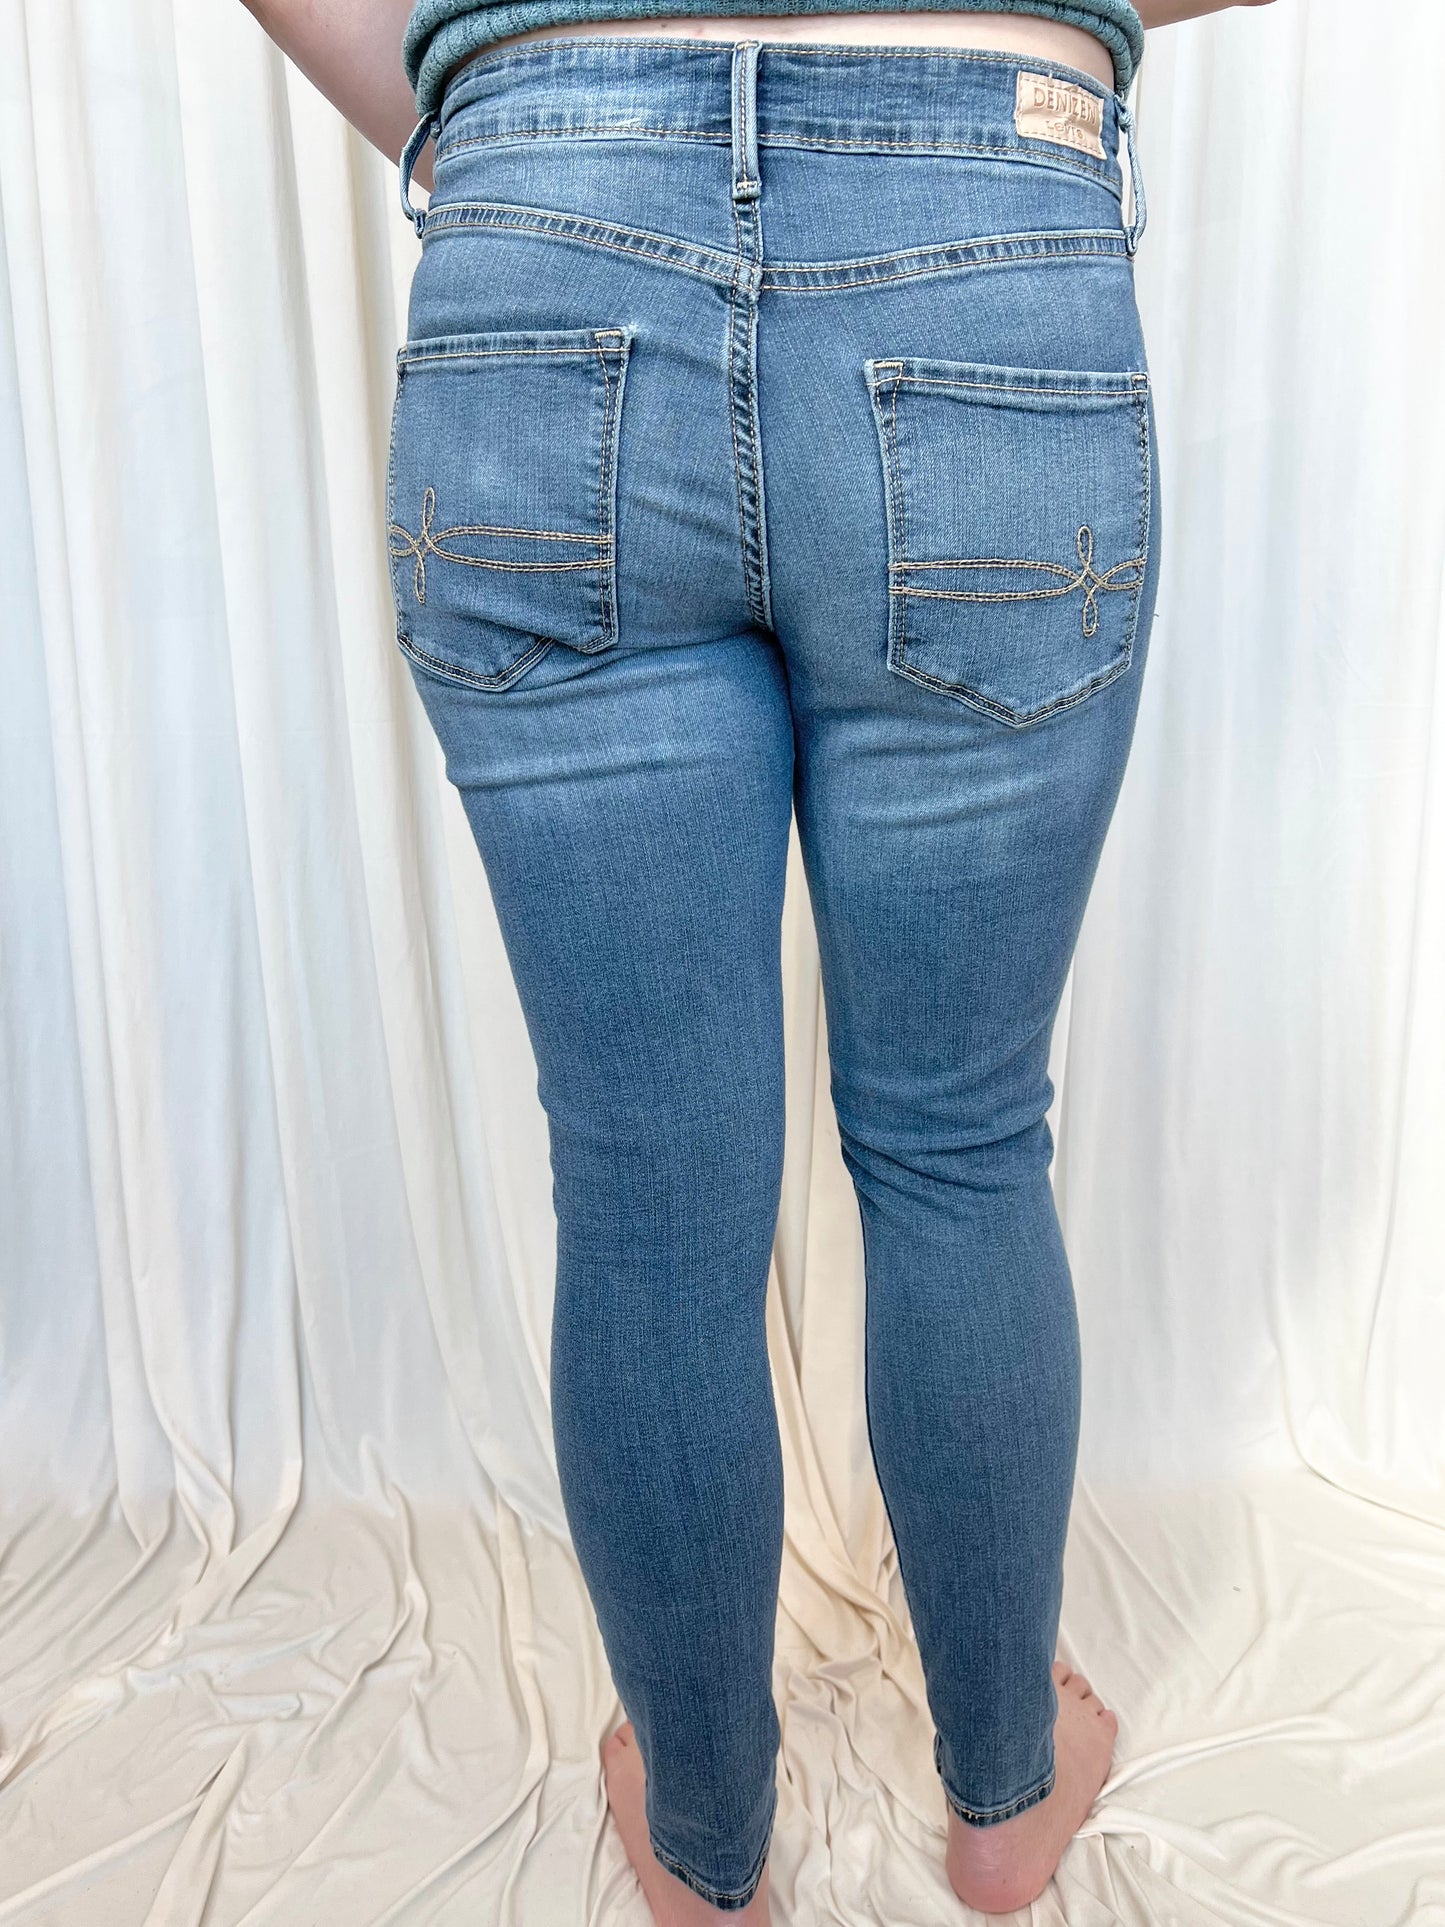 Medium Wash Jeans - 6